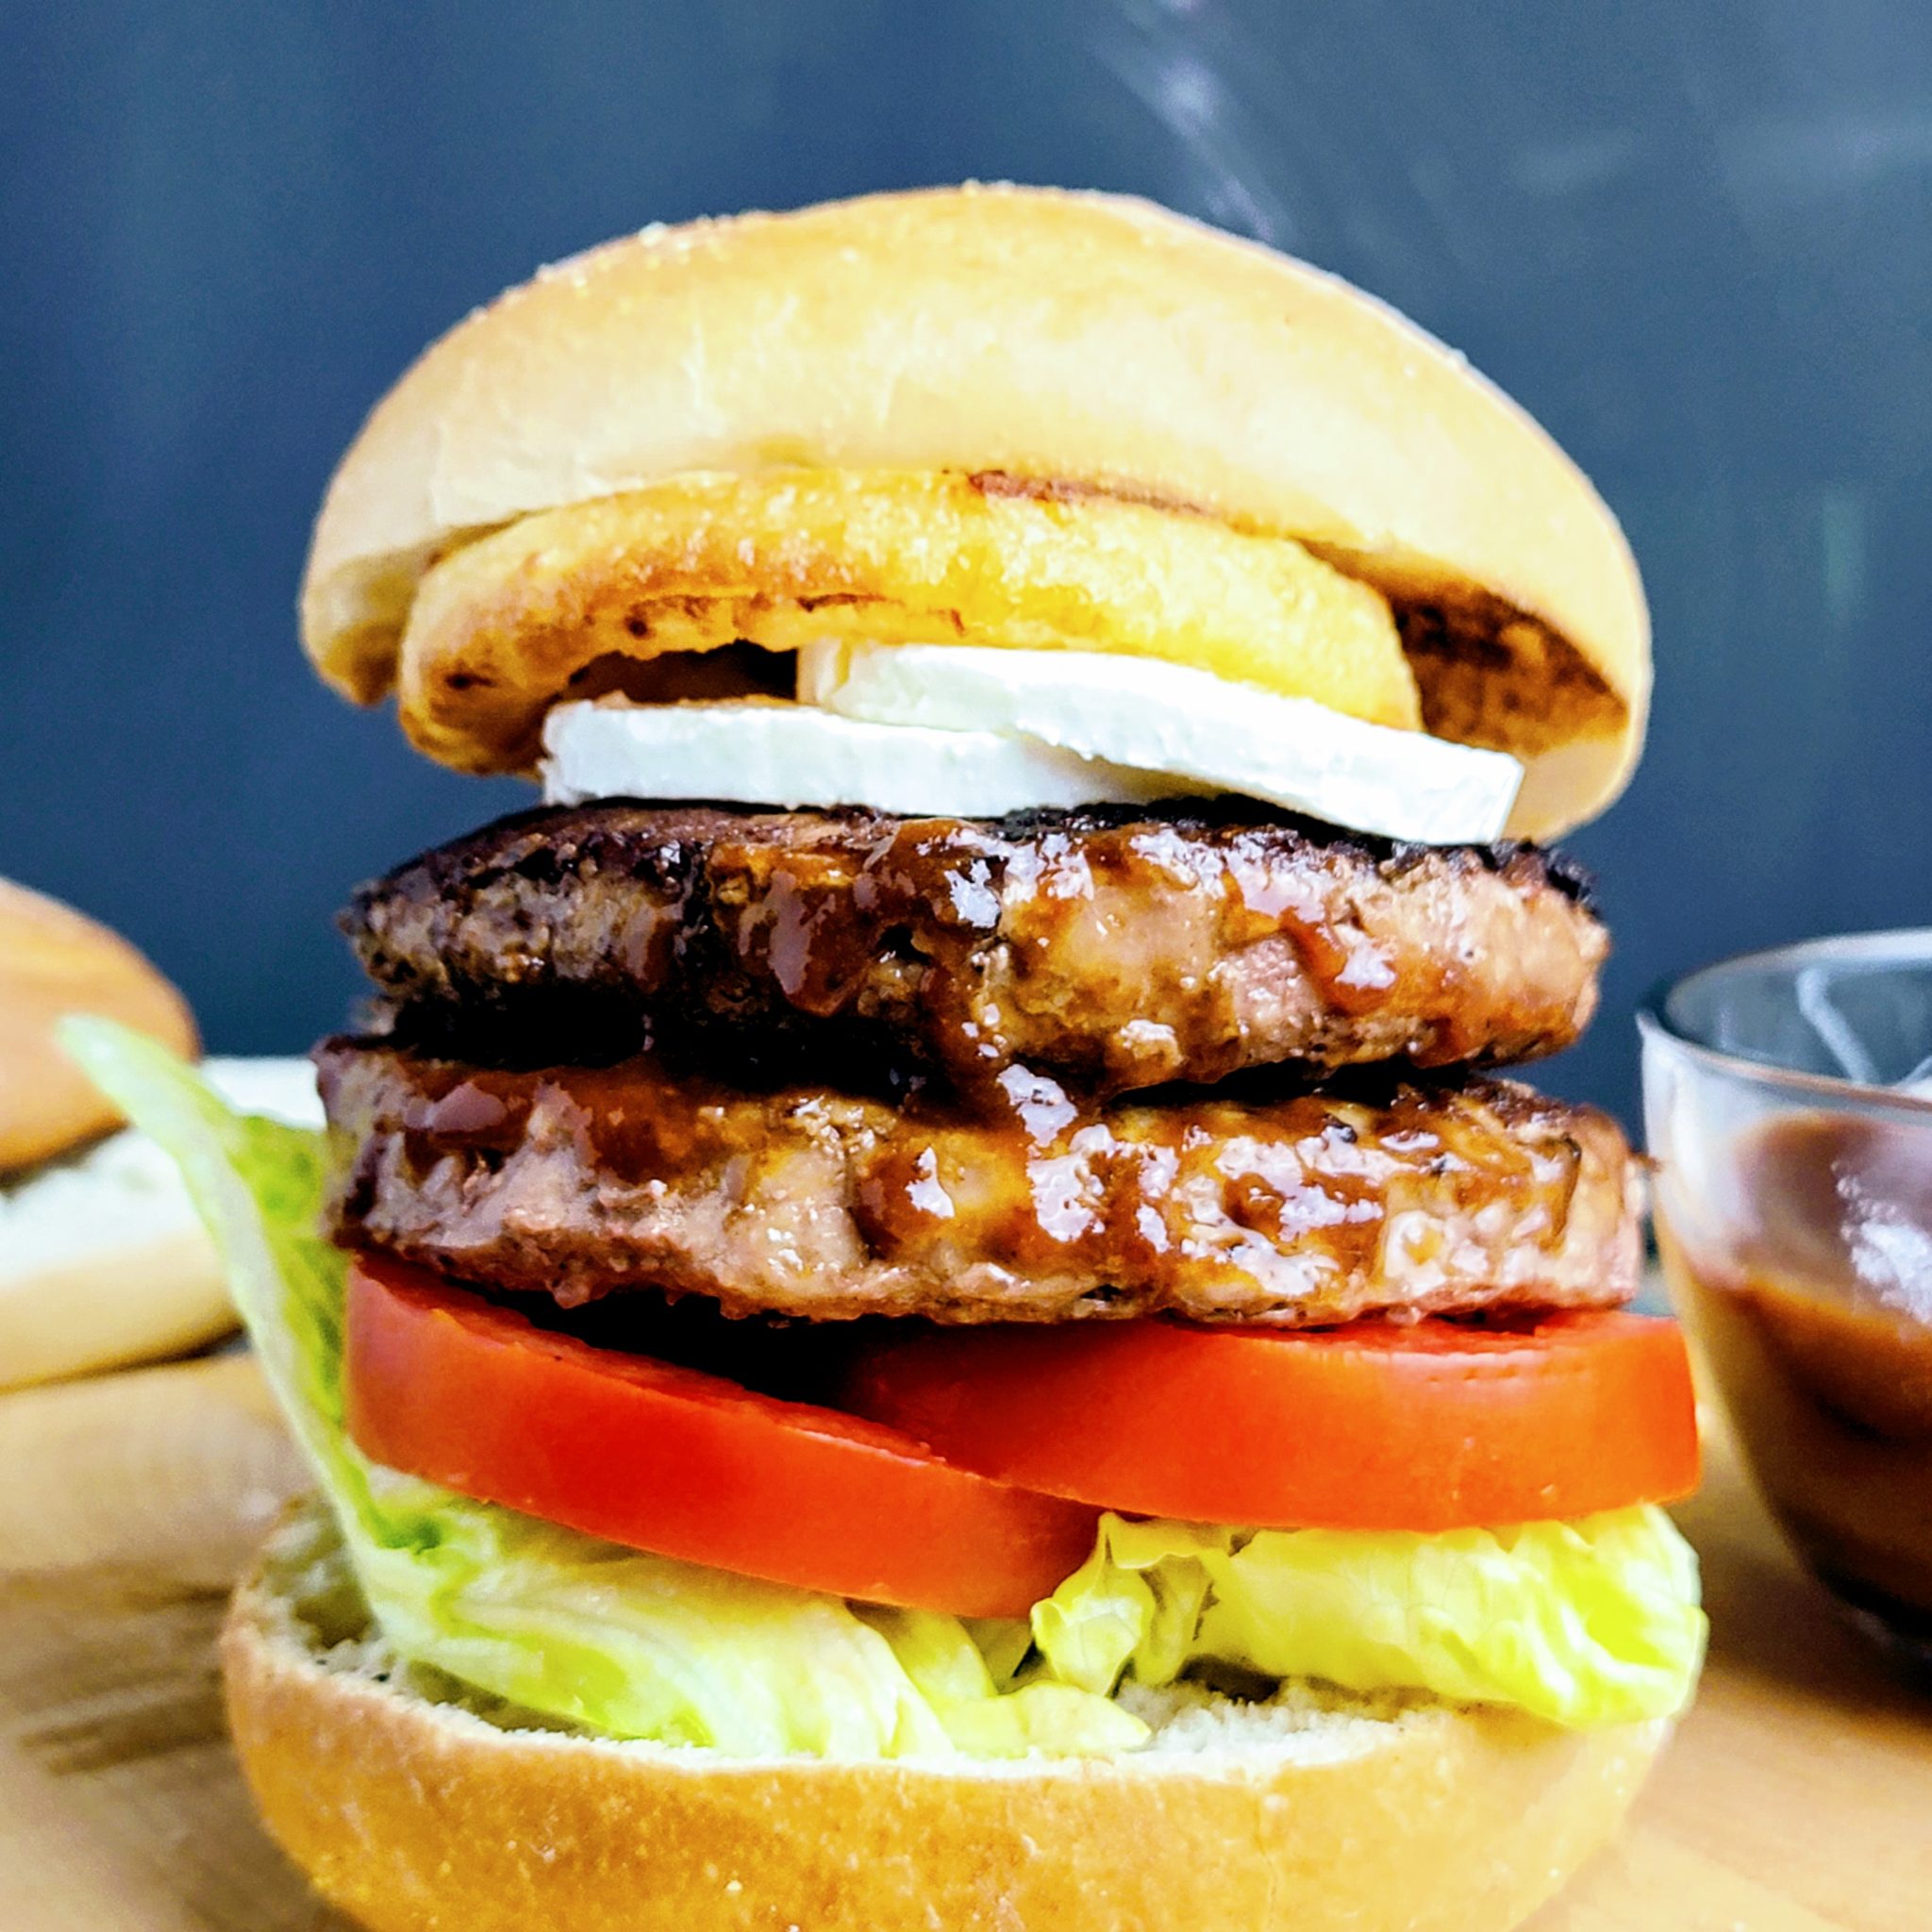 https://throwdownkitchen.com/wp-content/uploads/2021/05/Steak-Burger-scaled.jpg